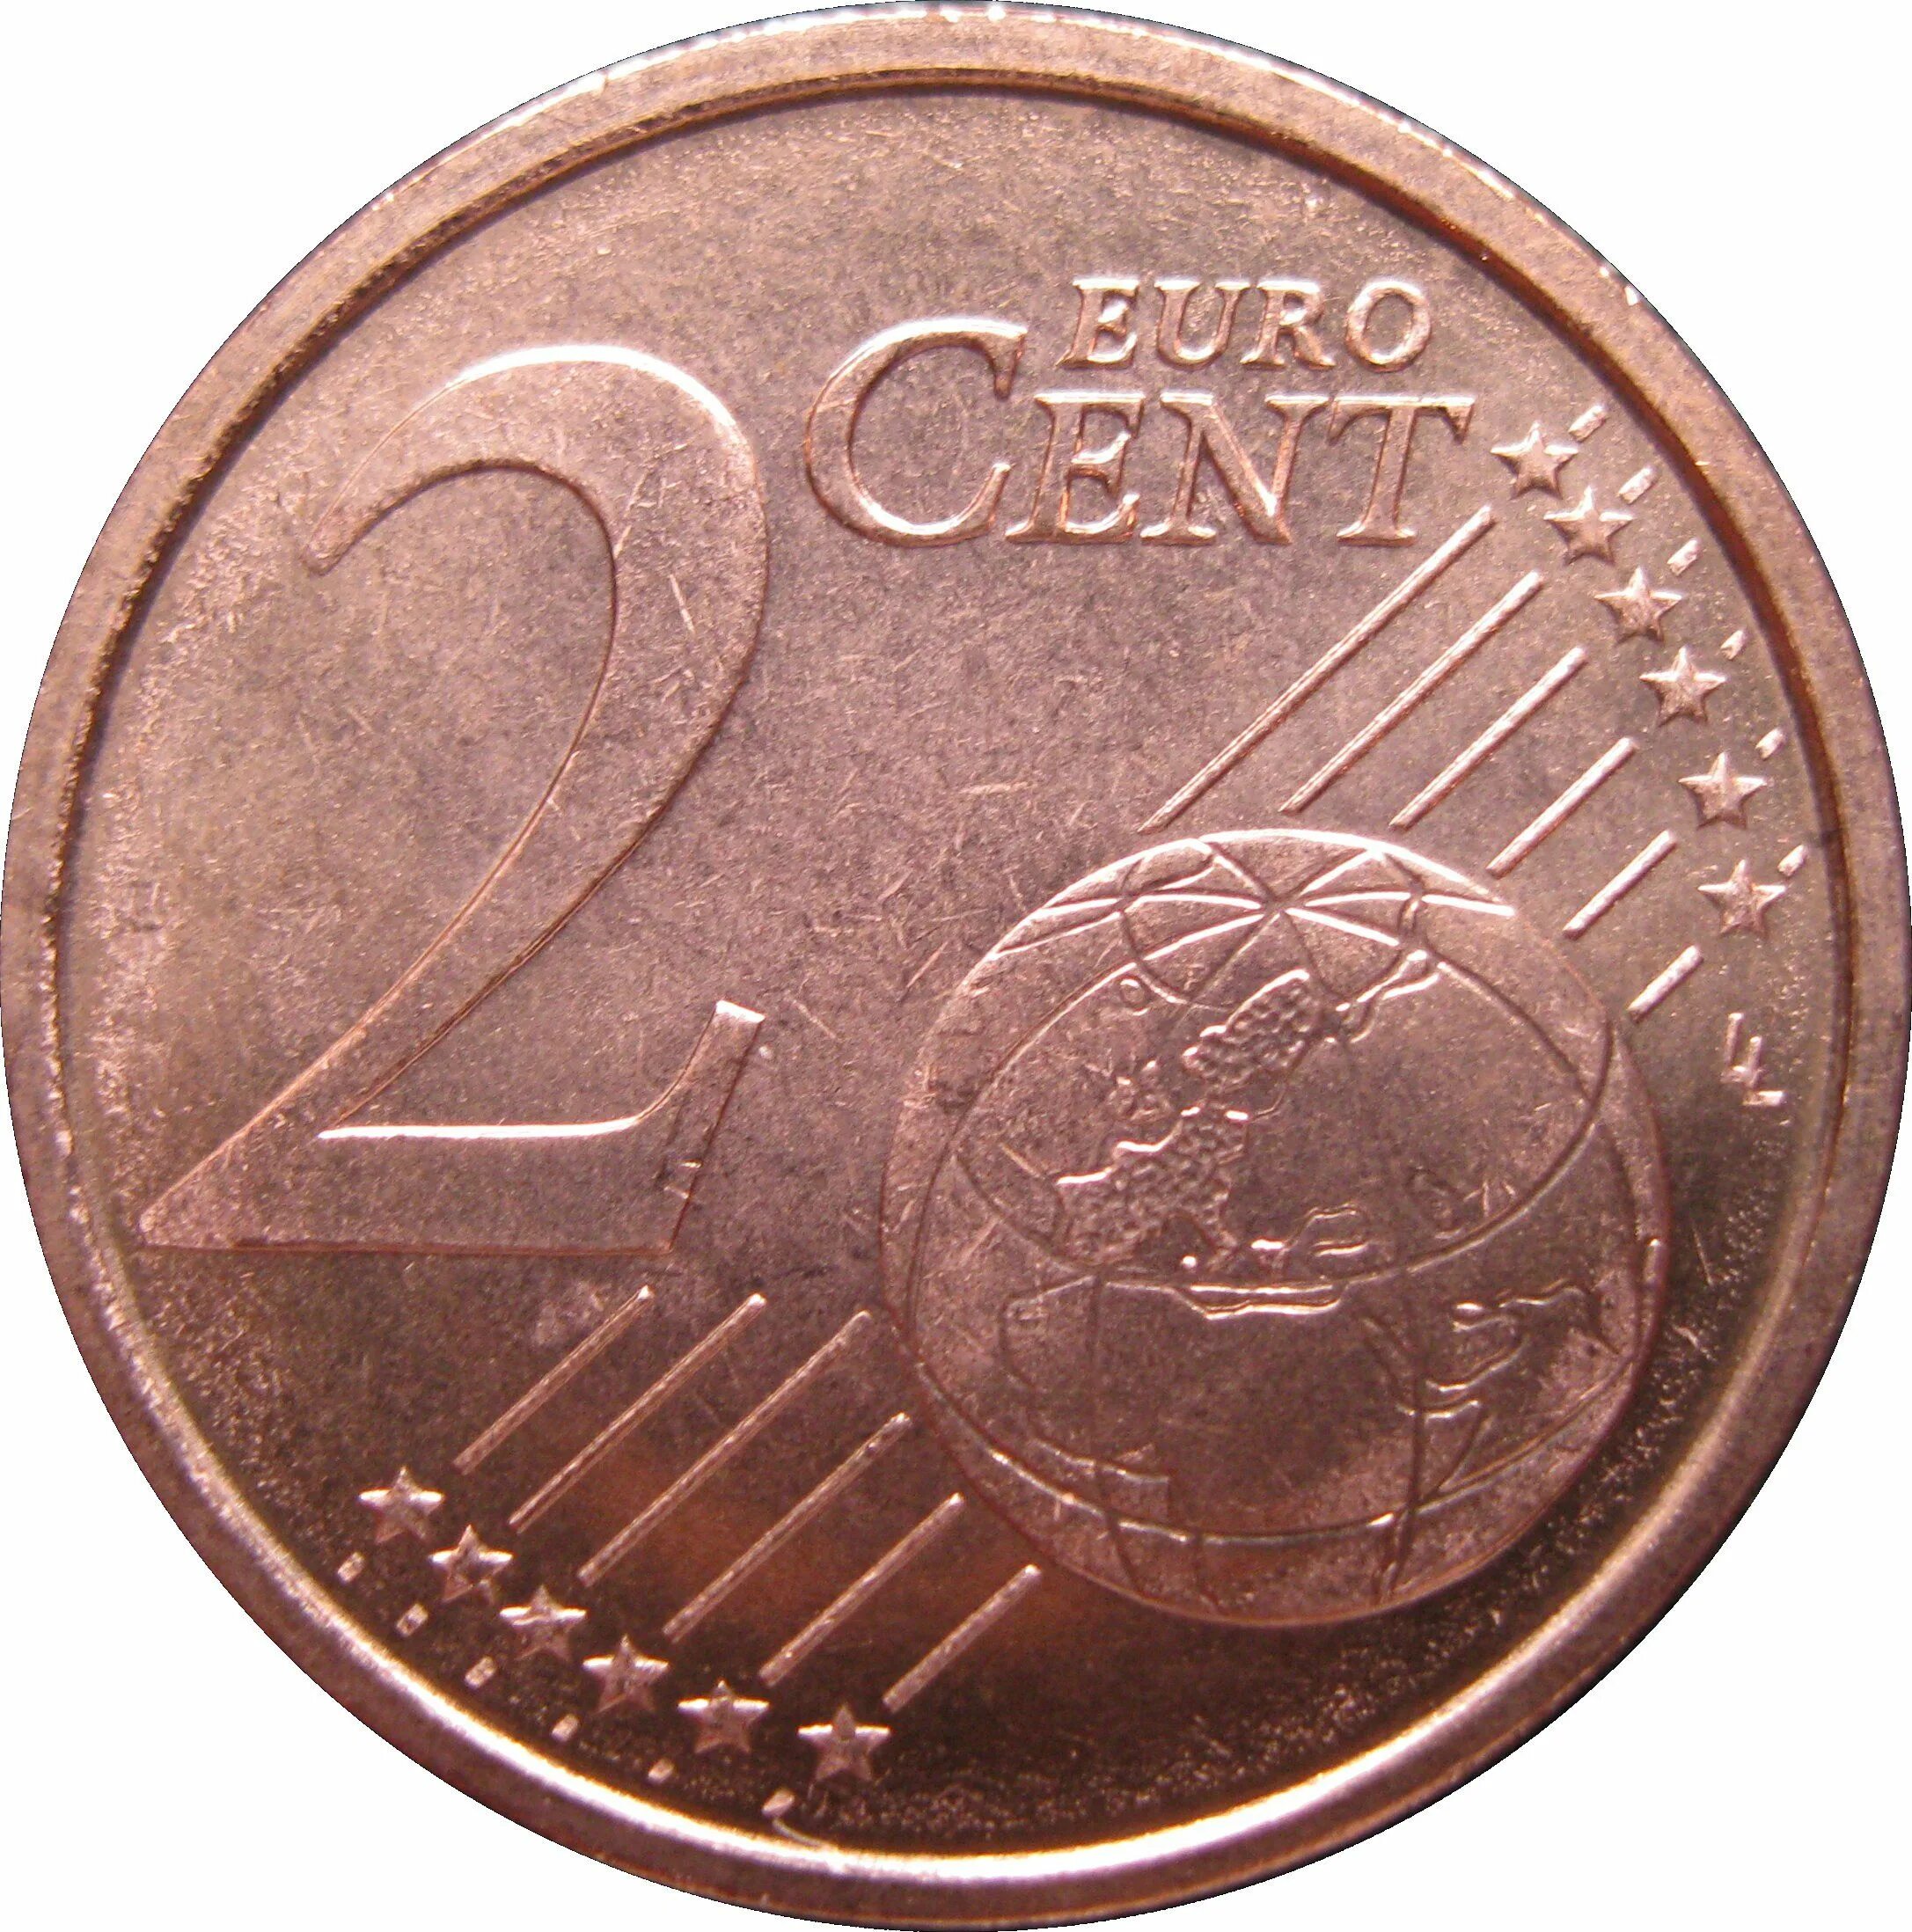 1 cent. 1 Евро цент монета. Монета 1/2 центов евро. Монета 1 евро цент Франция. 2 Euro Cent 1999 года Франция.